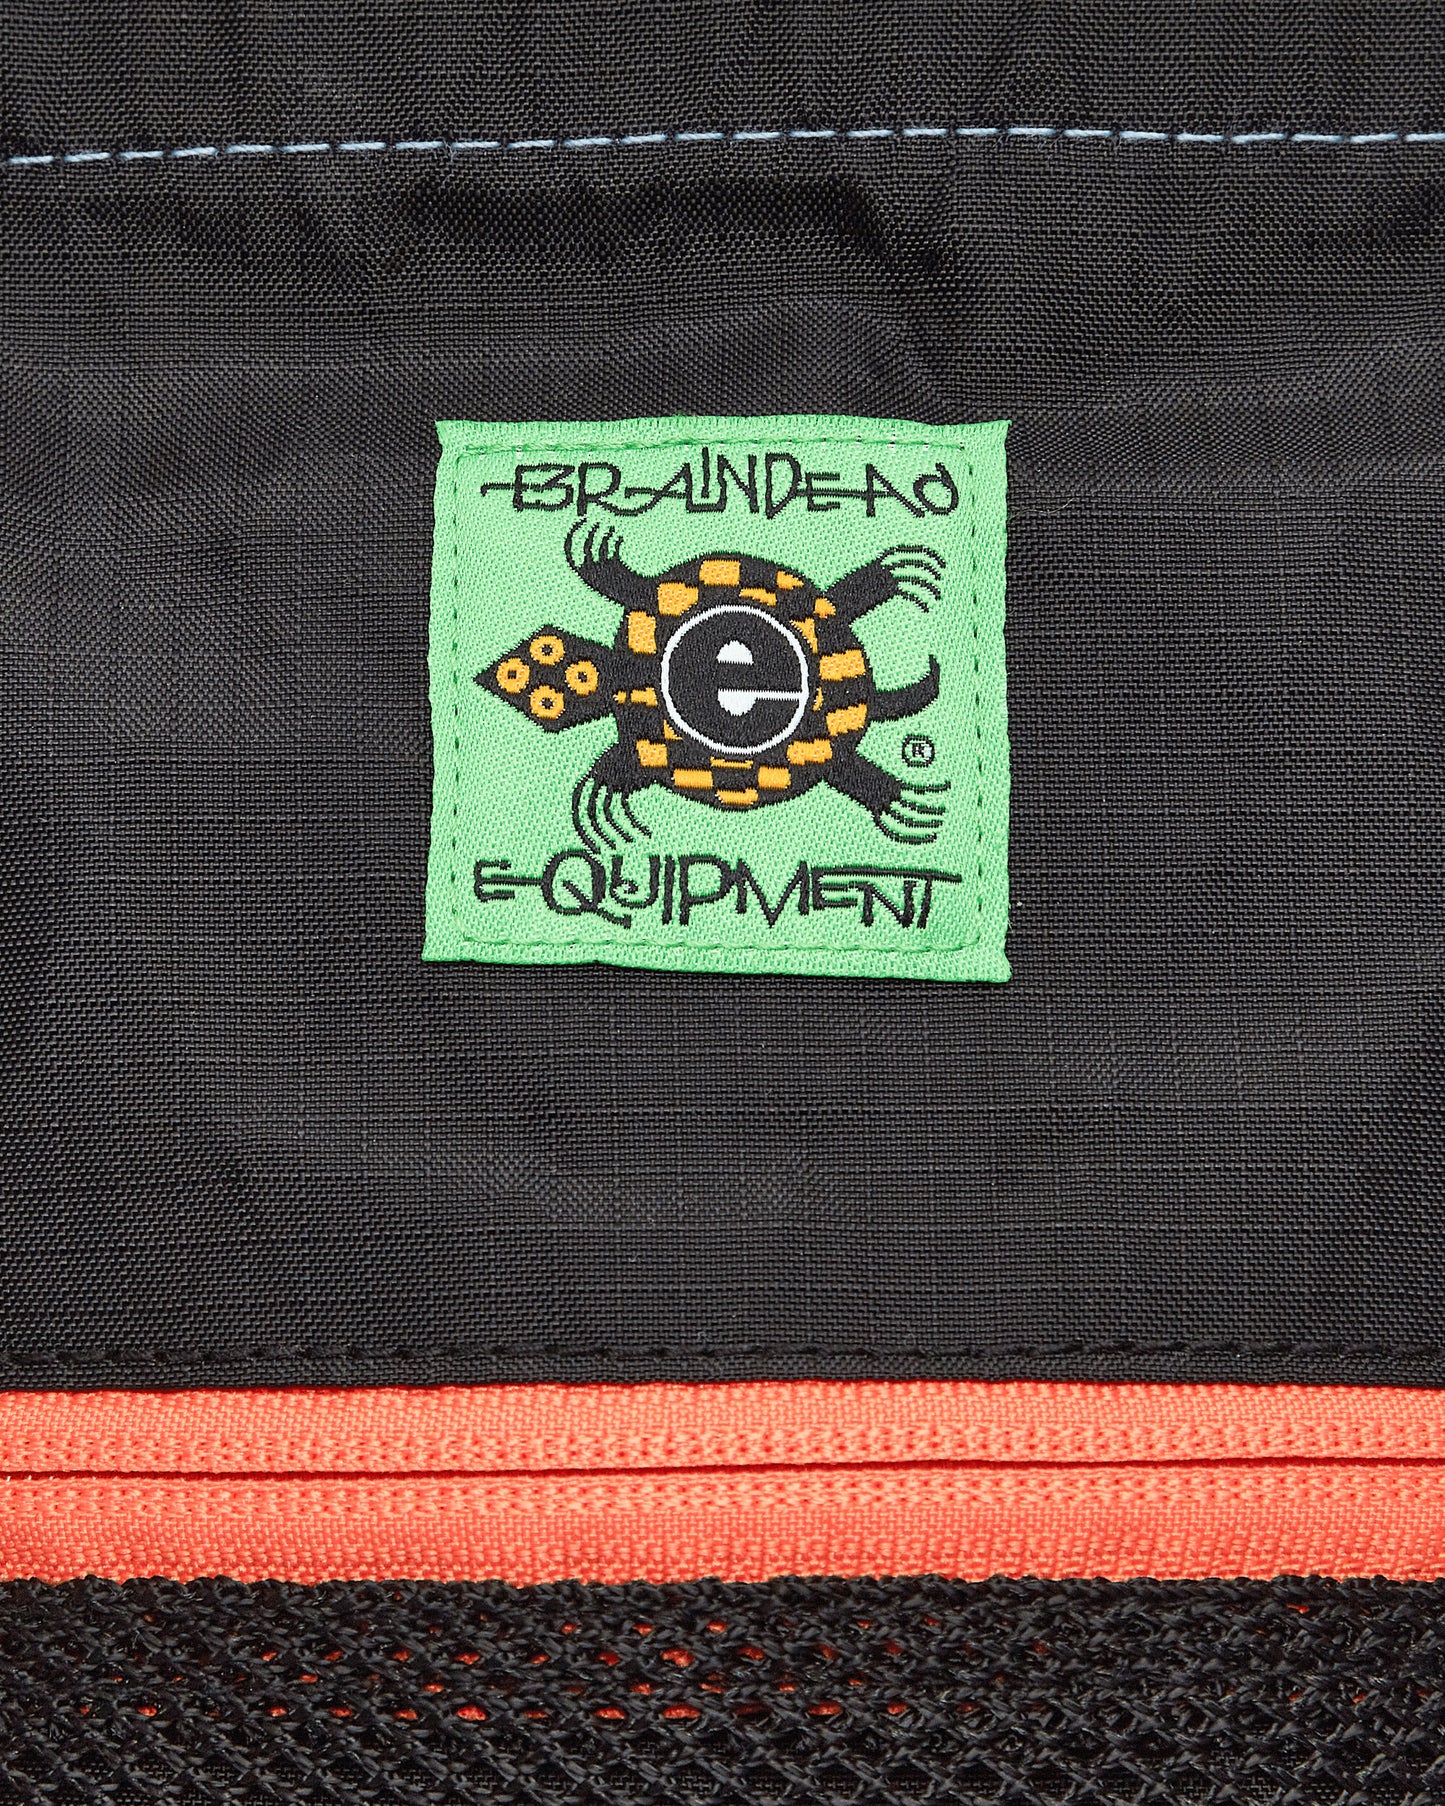 Brain Dead Equipment Chalk Bag Black Bags and Backpacks Pouches A00003765BK BLACK